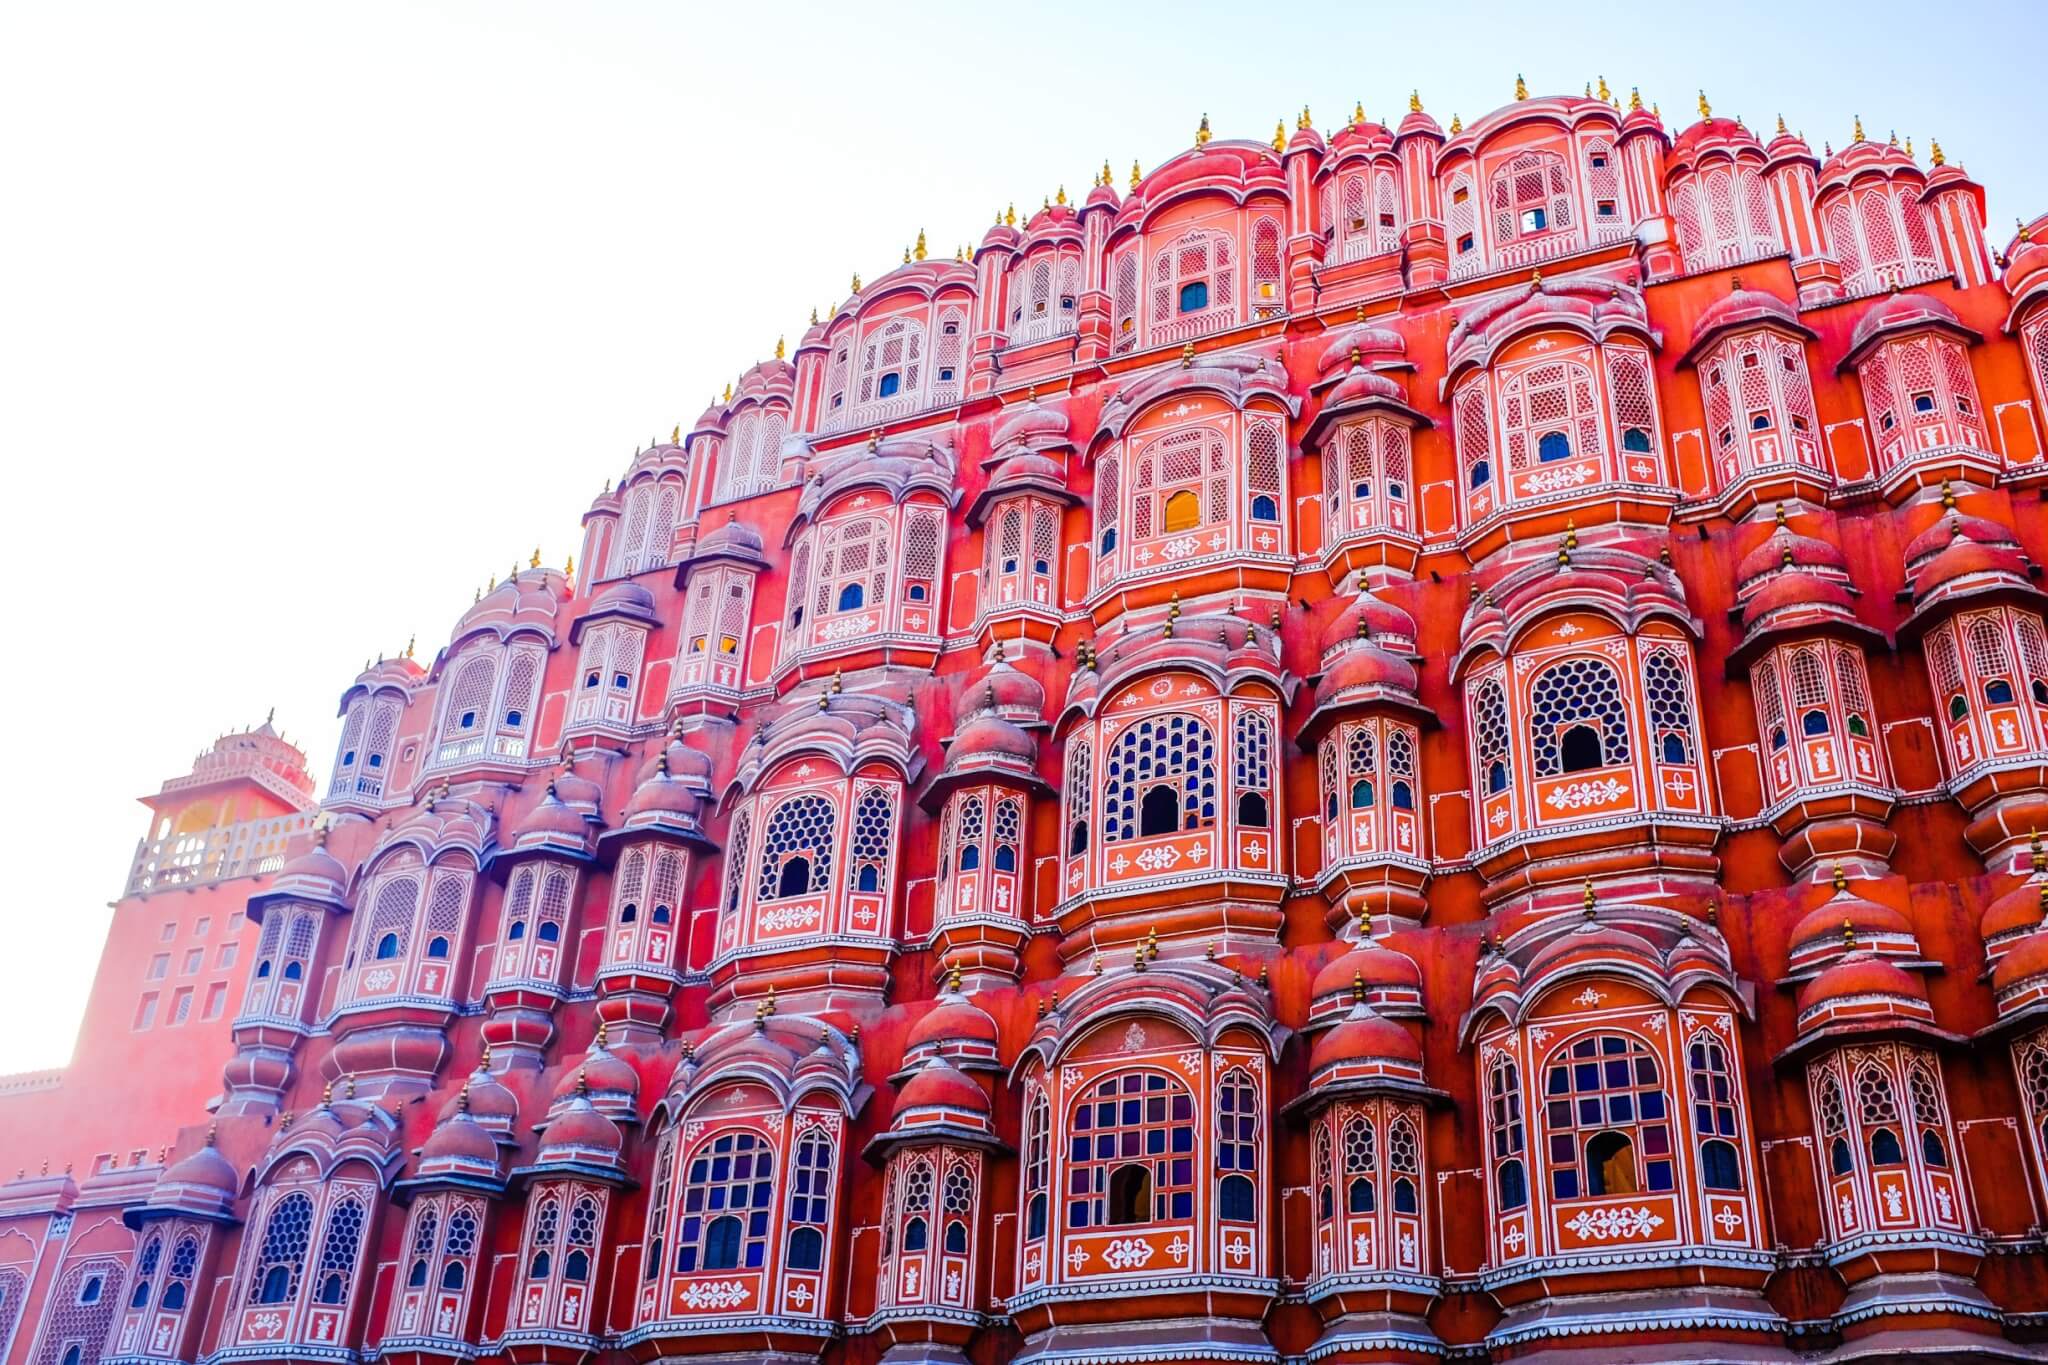 Jaipur, the capital of Rajasthan